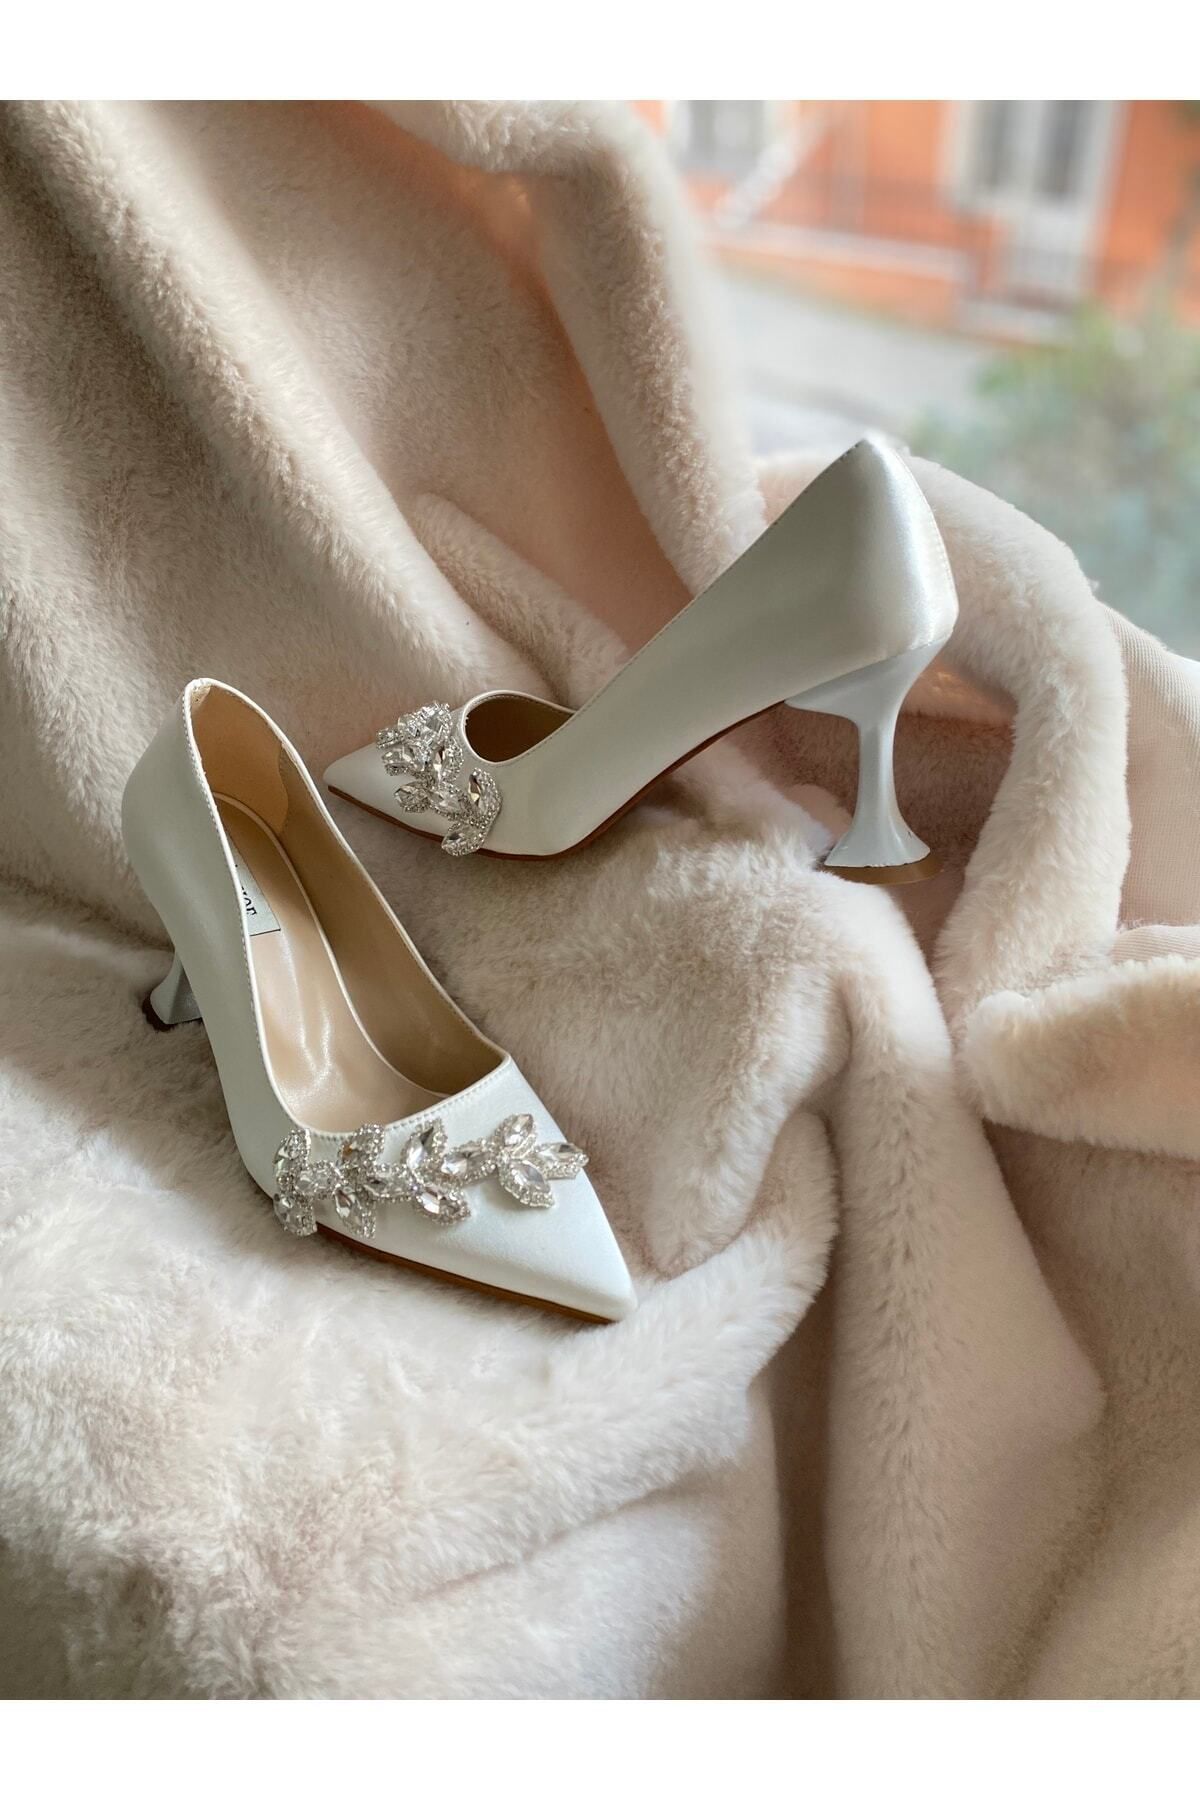 LADİESHOE El Işleme Taşlı Kadın Ayakkabı Beyaz Stiletto